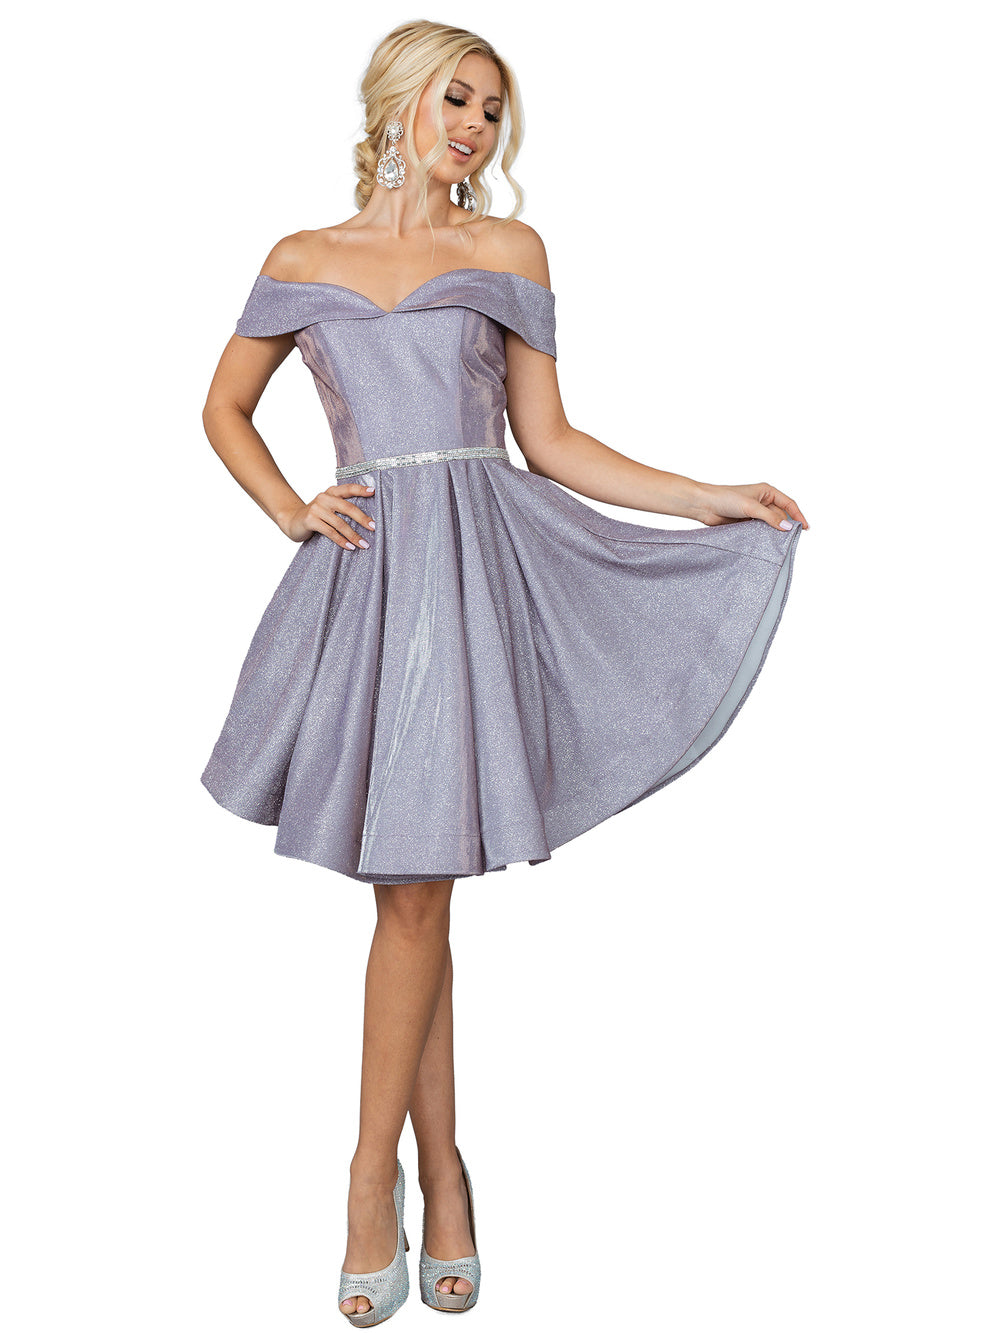 CD 0188 Size 12 Short Shimmer Blush Fit & Flare Cocktail Dress Sheer Beaded  V Neck Formal